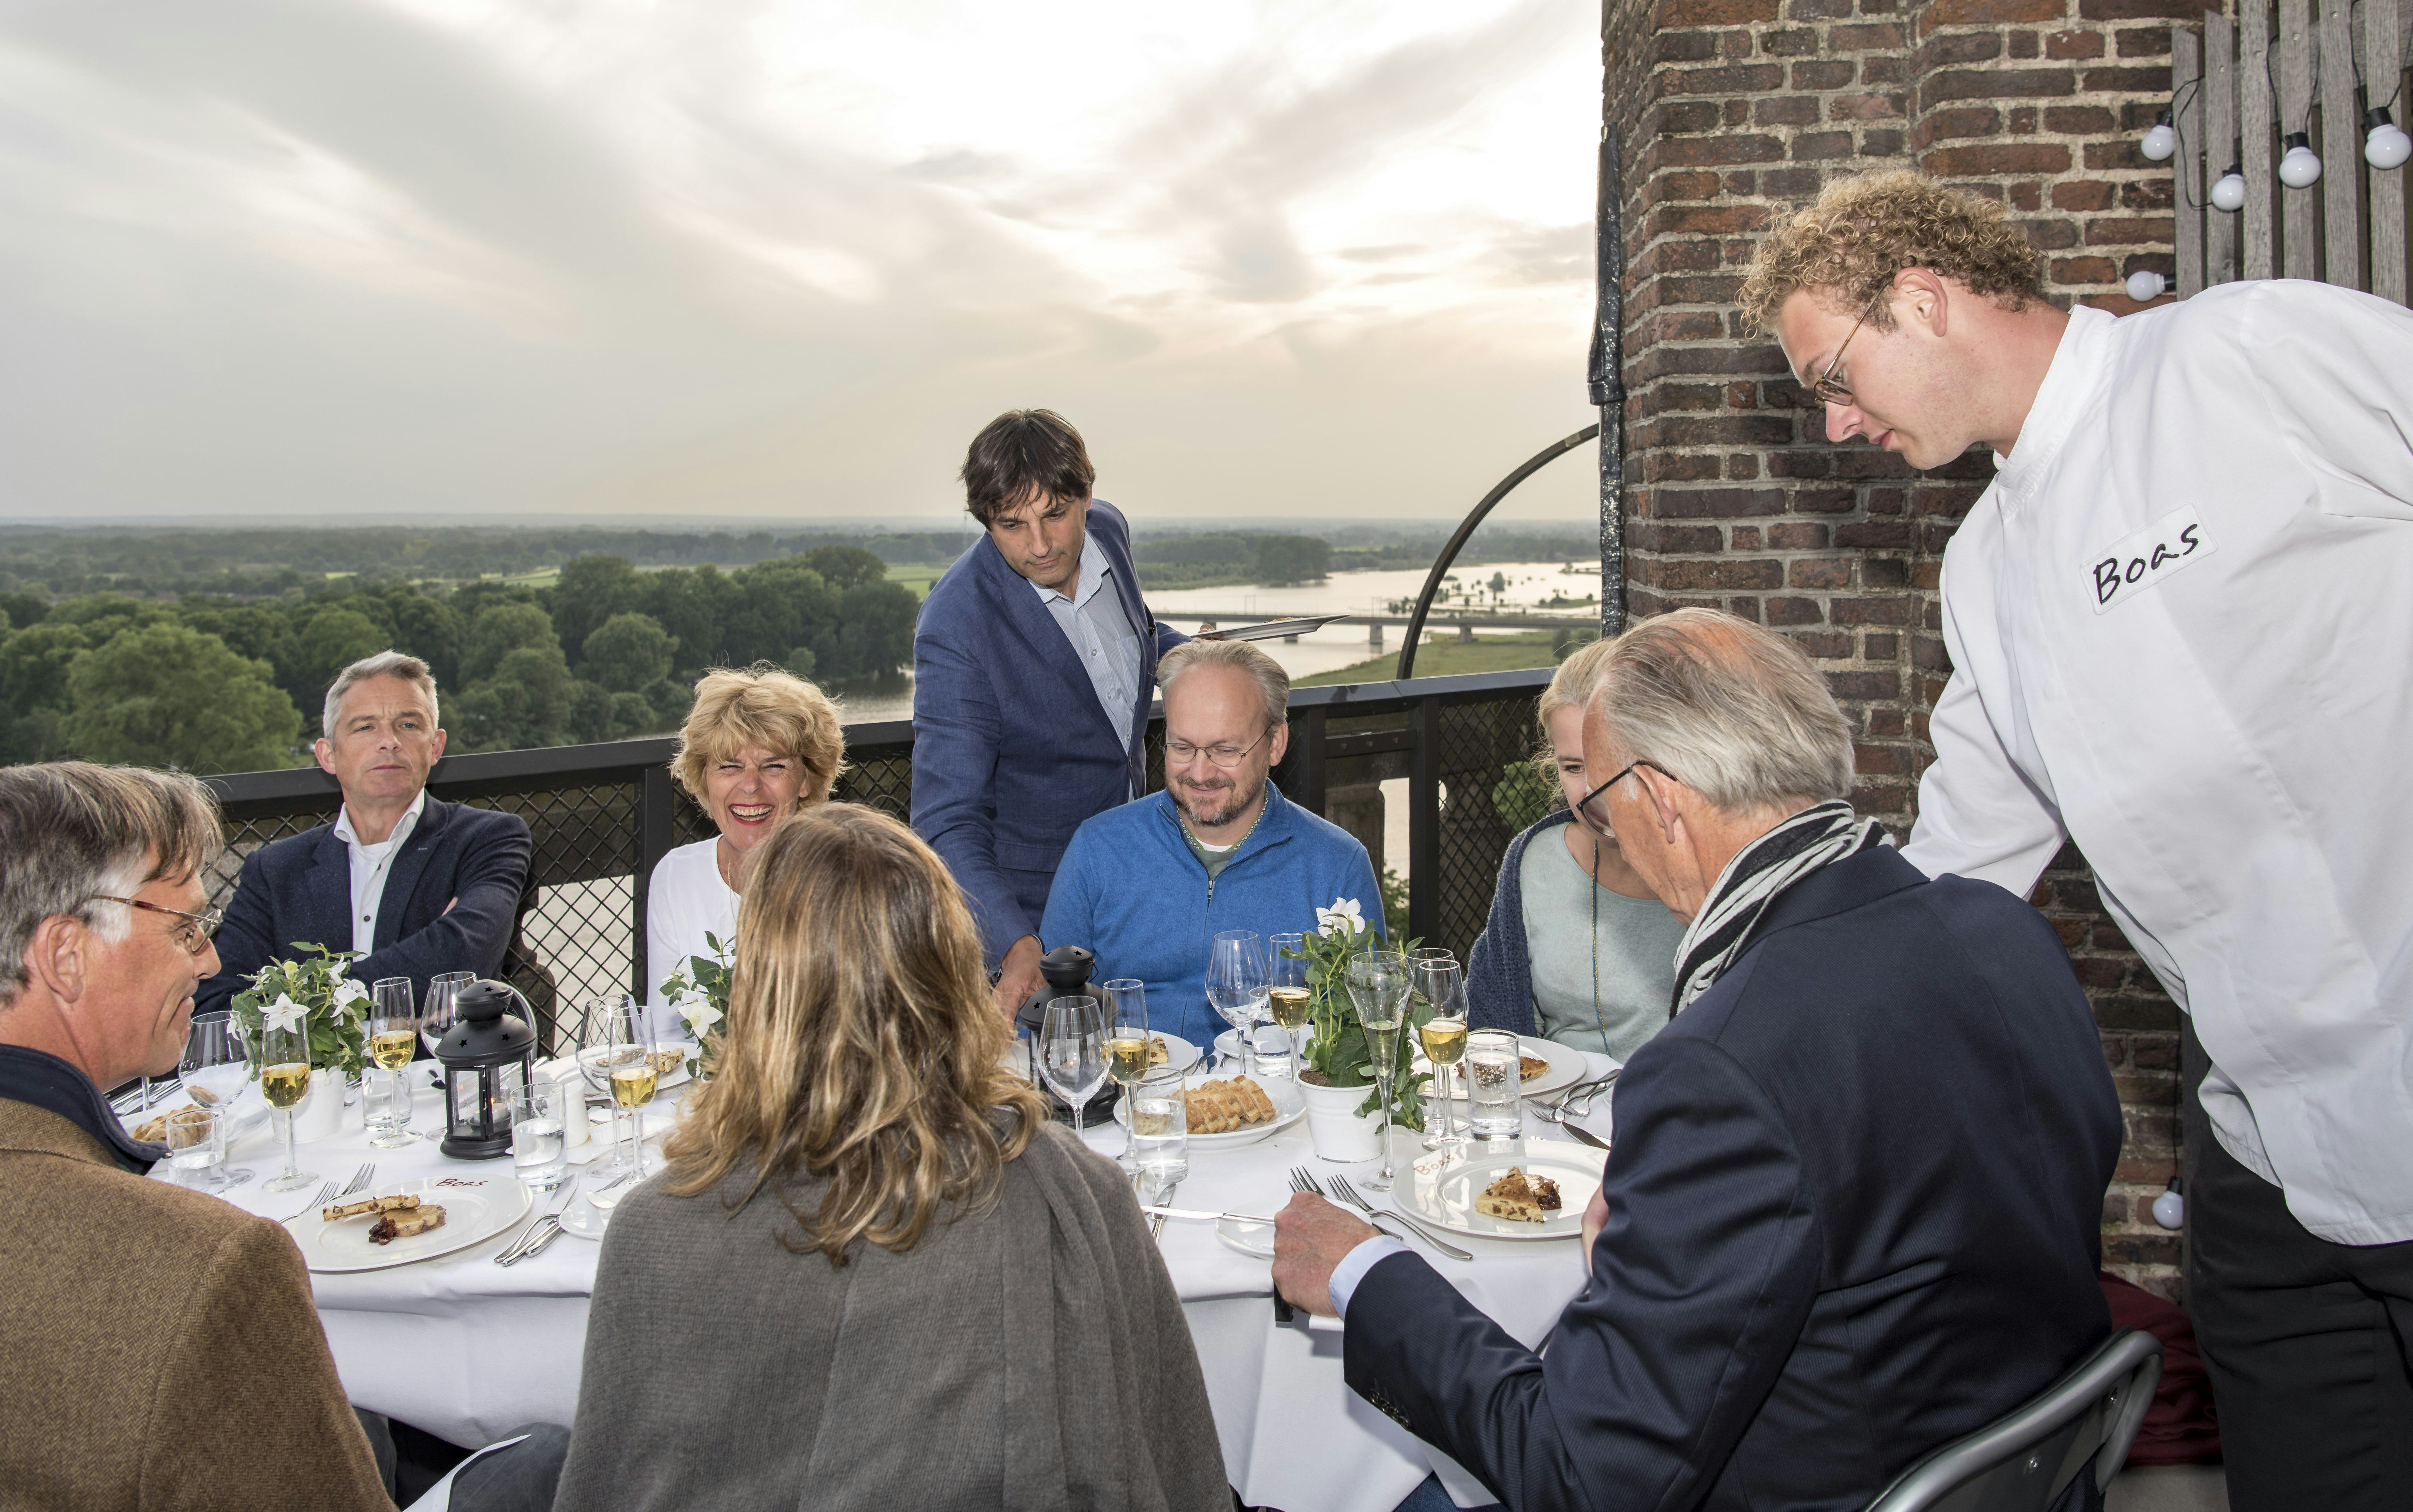 Restaurant Boas biedt dineren op de kerktoren in Deventer